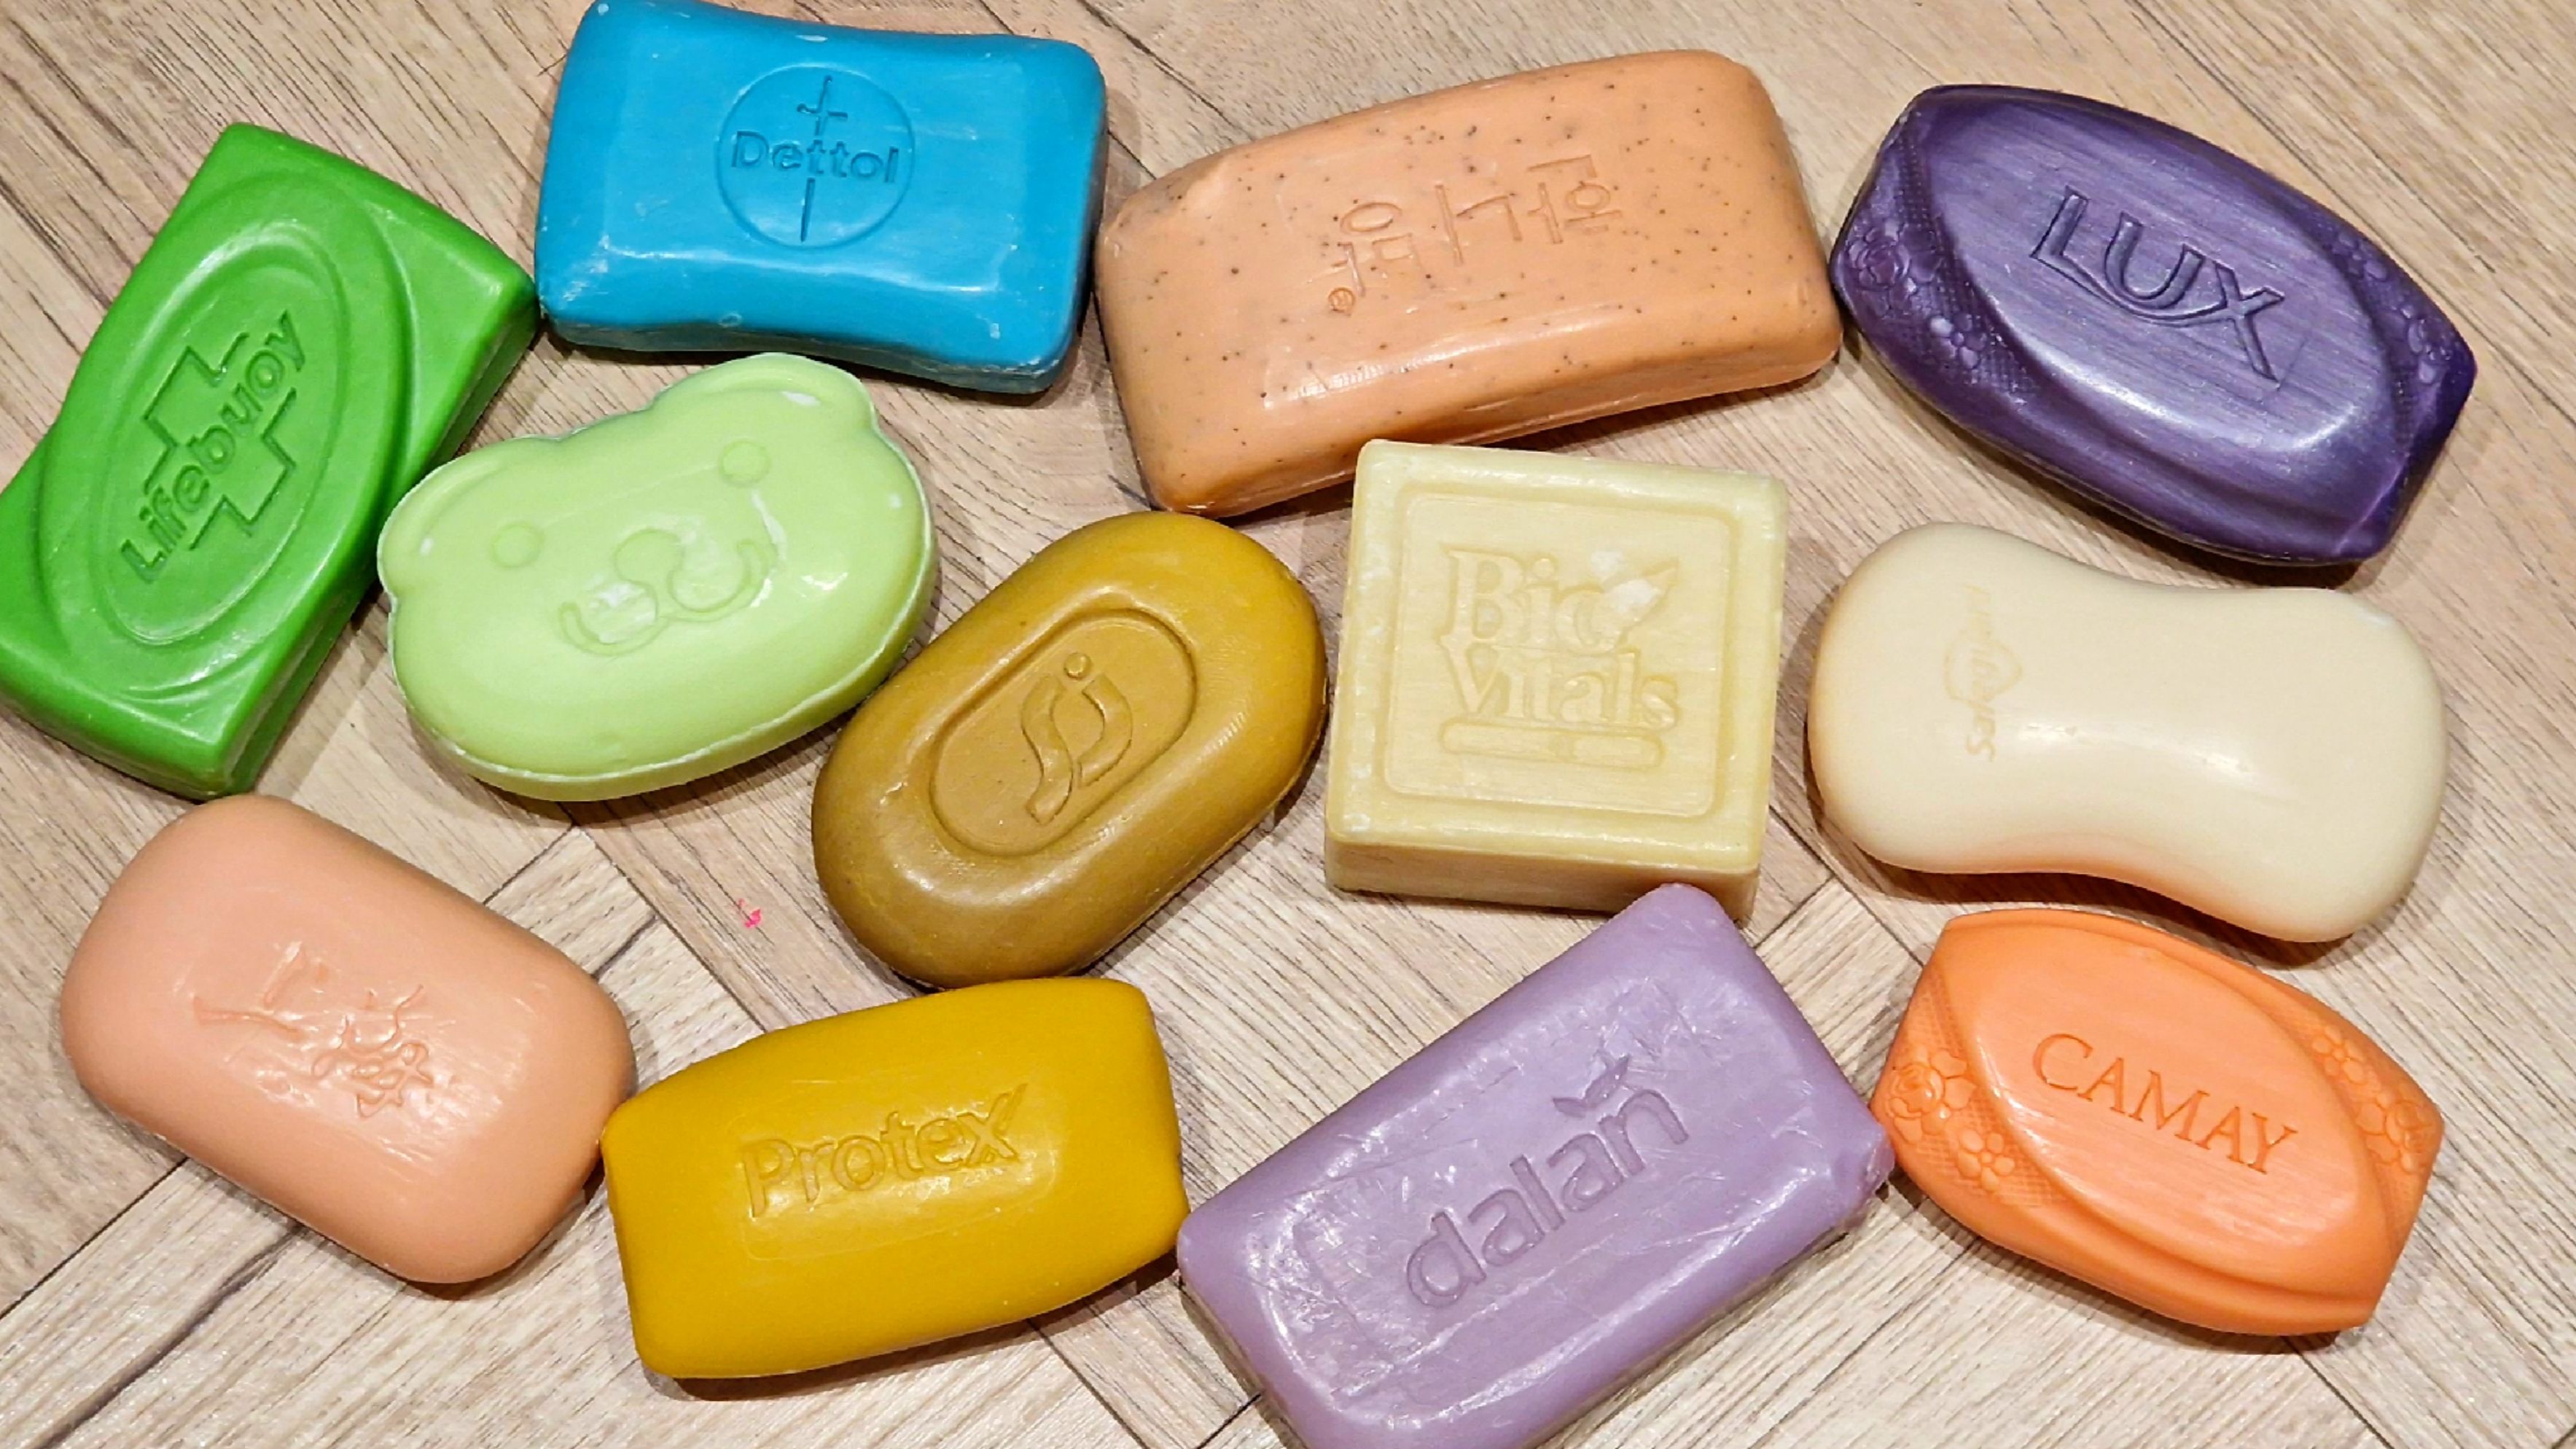 SOAP UK 💖 睡眠解压视频] 💖干脆皂❤️半软 奇怪的令人满意的视频 |   皂块